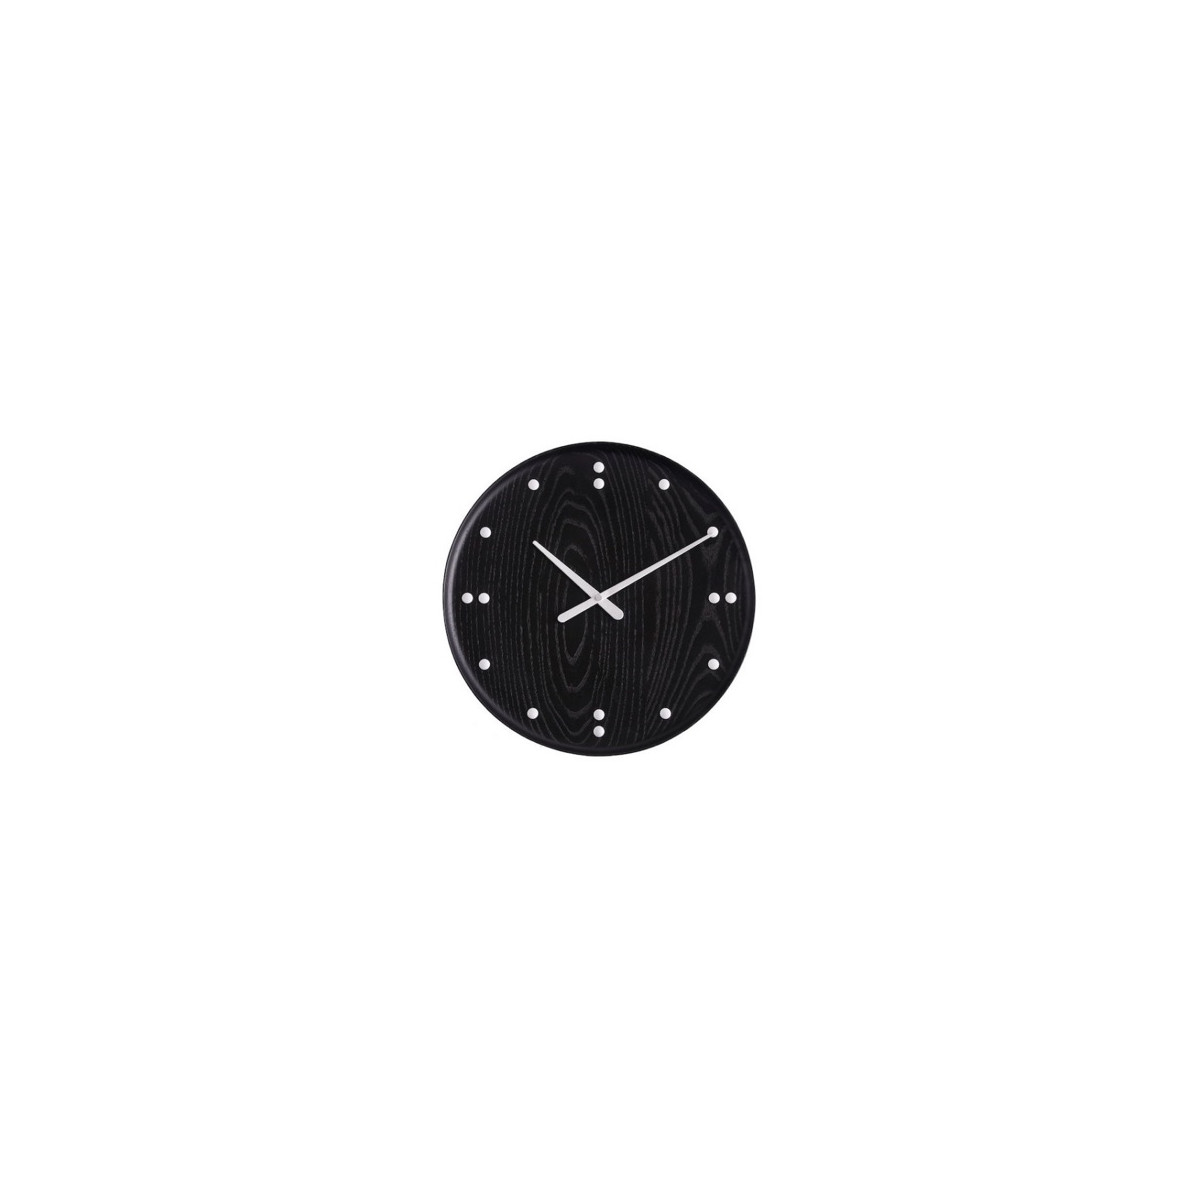 Ø25cm – FJ Clock – stained ash